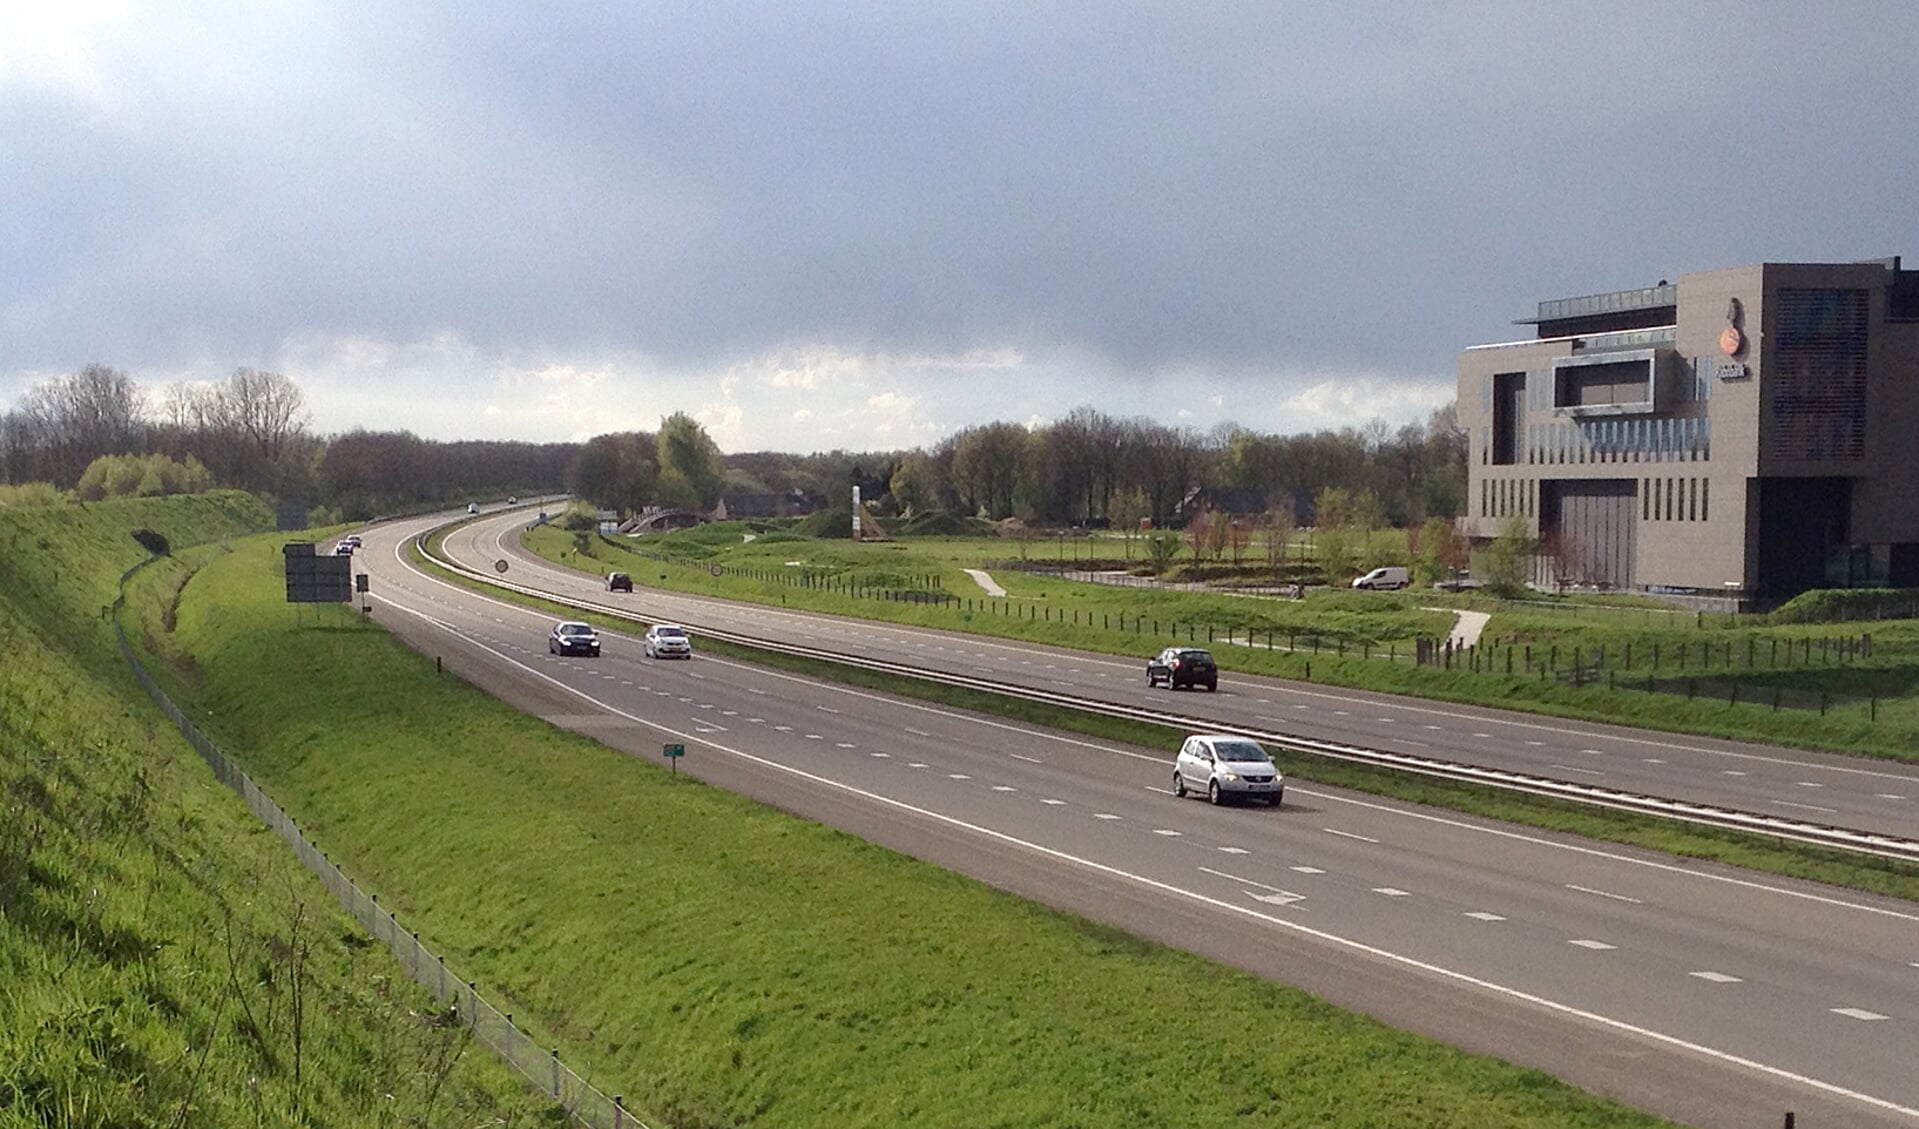 Onderhoudswerkzaamheden aan de A77 tussen knooppunt Rijkevoort en Duitsland.